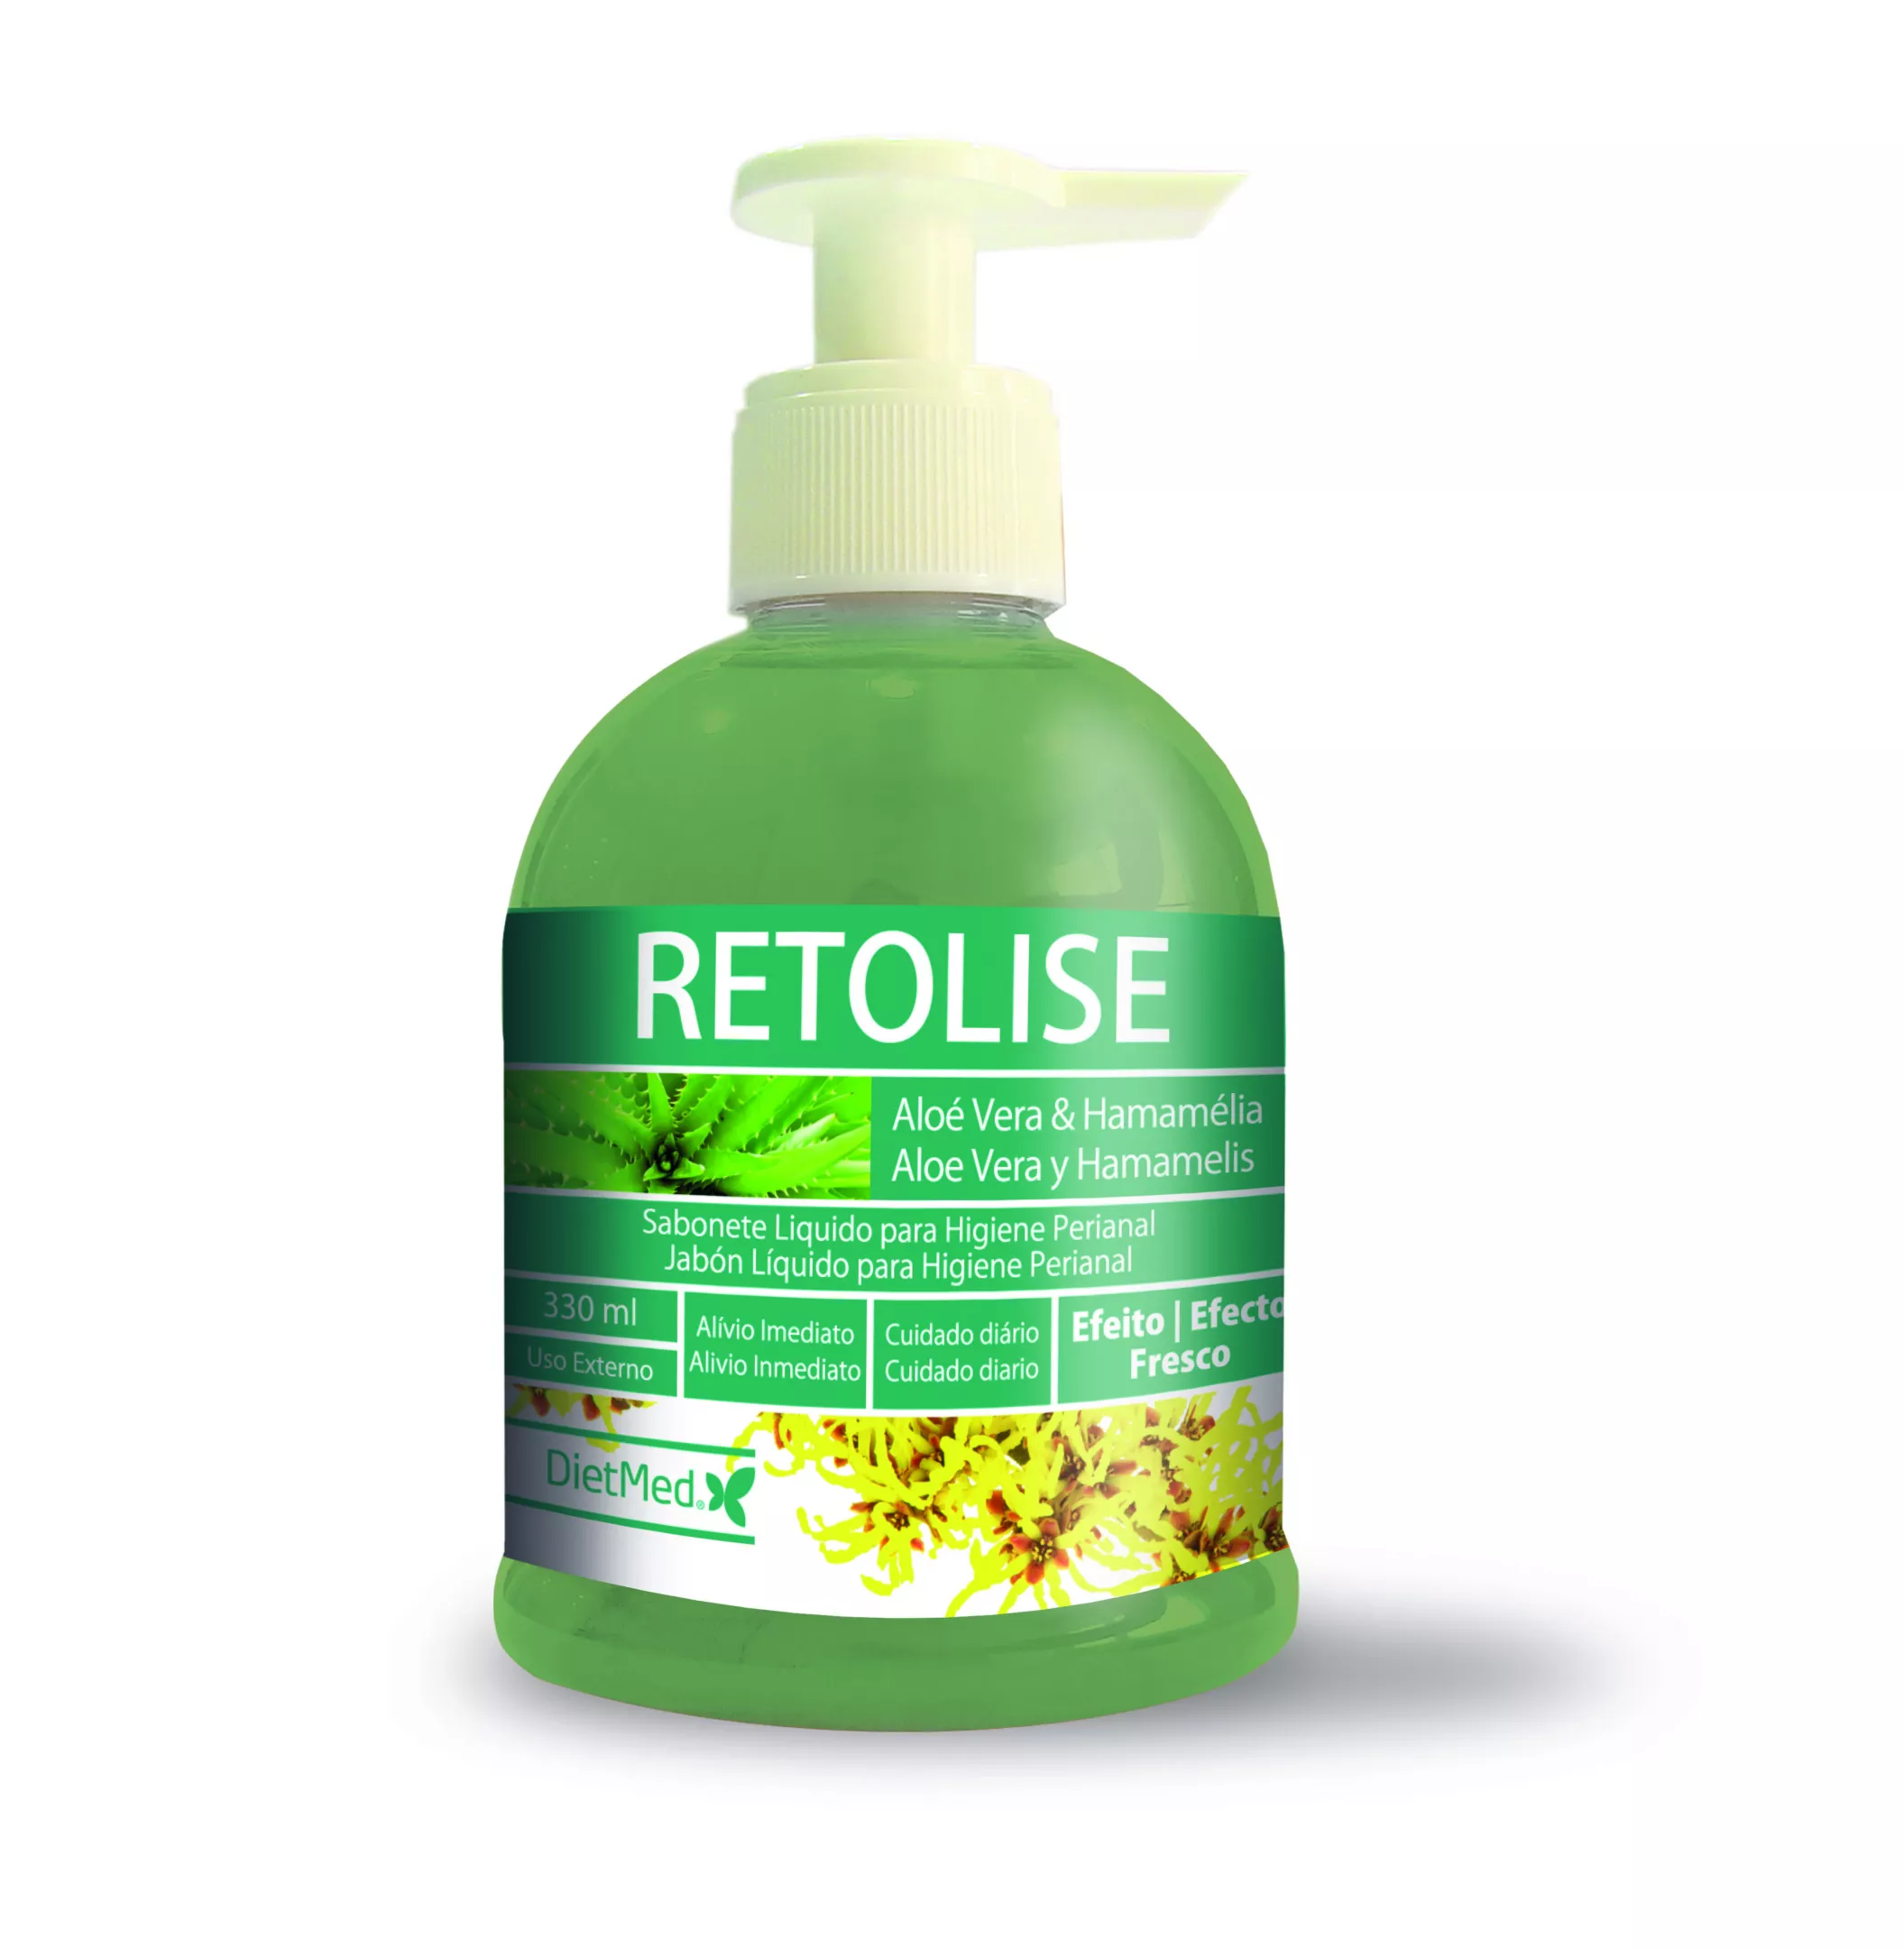 Produse igiena - Retolise daily hygiene 330ml, sinapis.ro